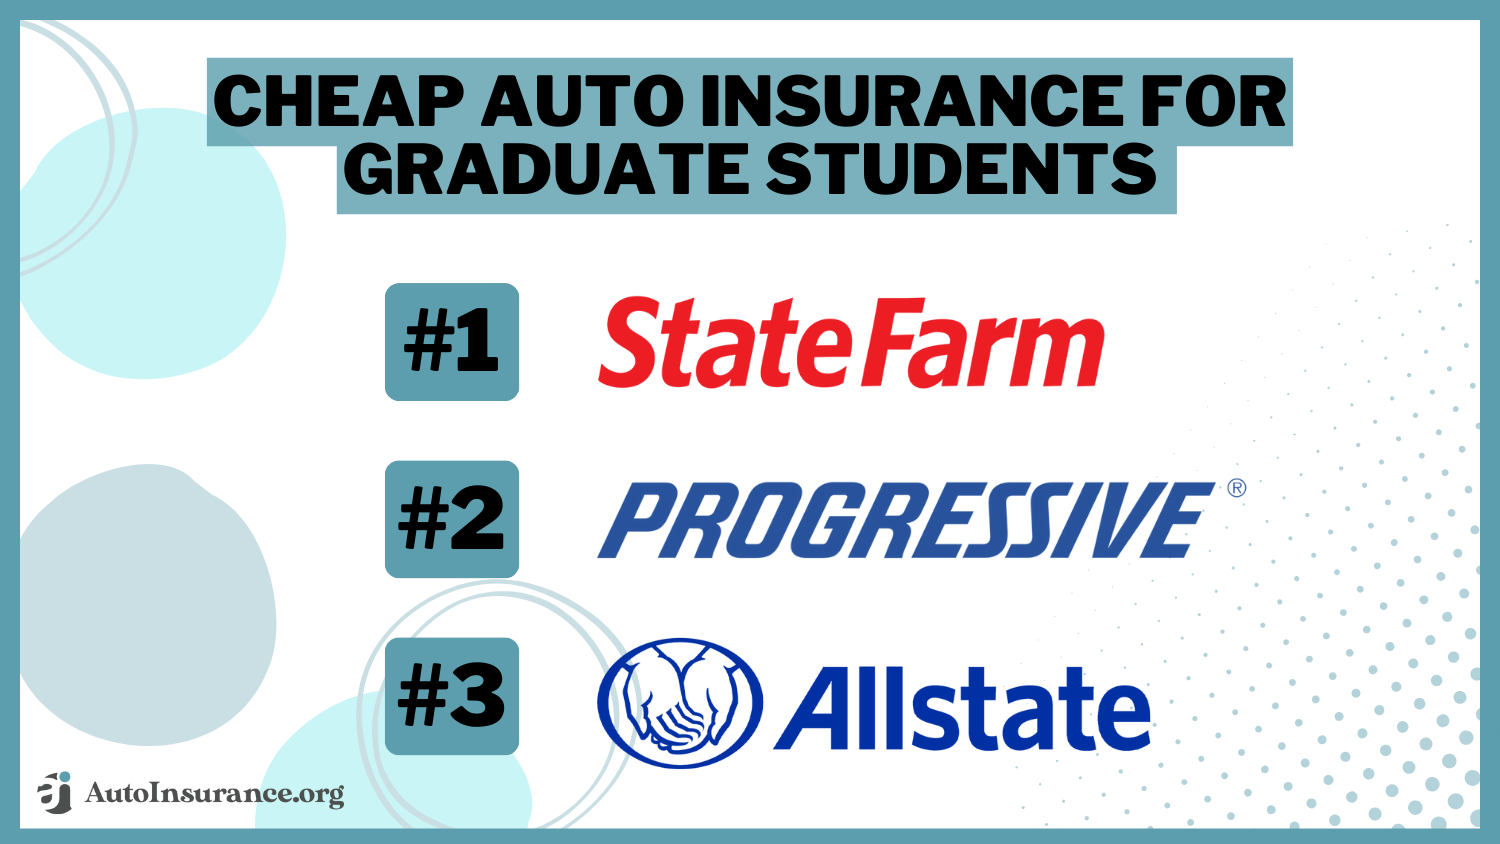 Cheap Auto Insurance for Graduate Students: State Farm, Progressive, Allstate